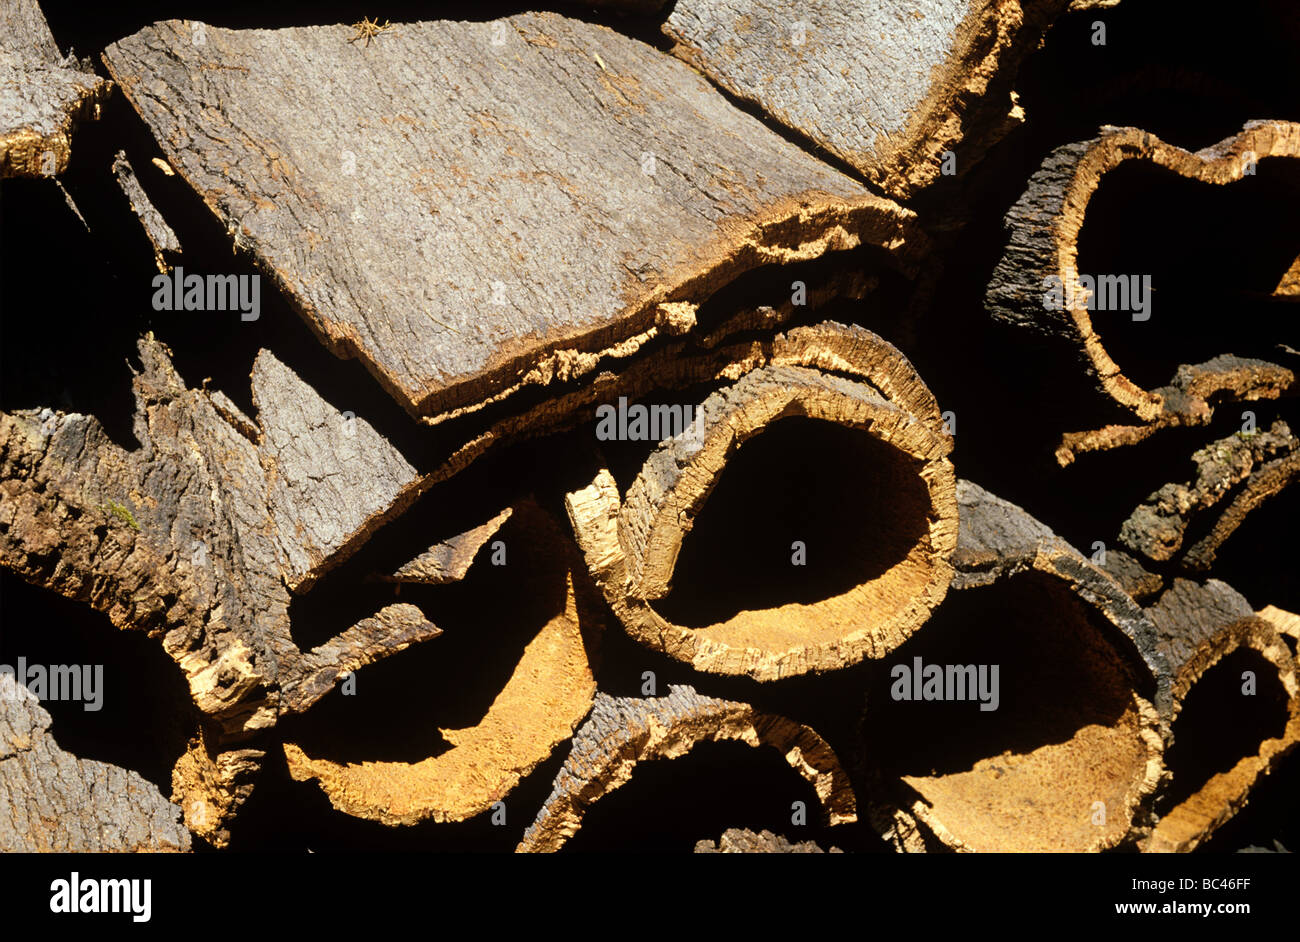 Quercia da sughero Quercus suber raccolte corteccia per la realizzazione di tappi in sughero Foto Stock